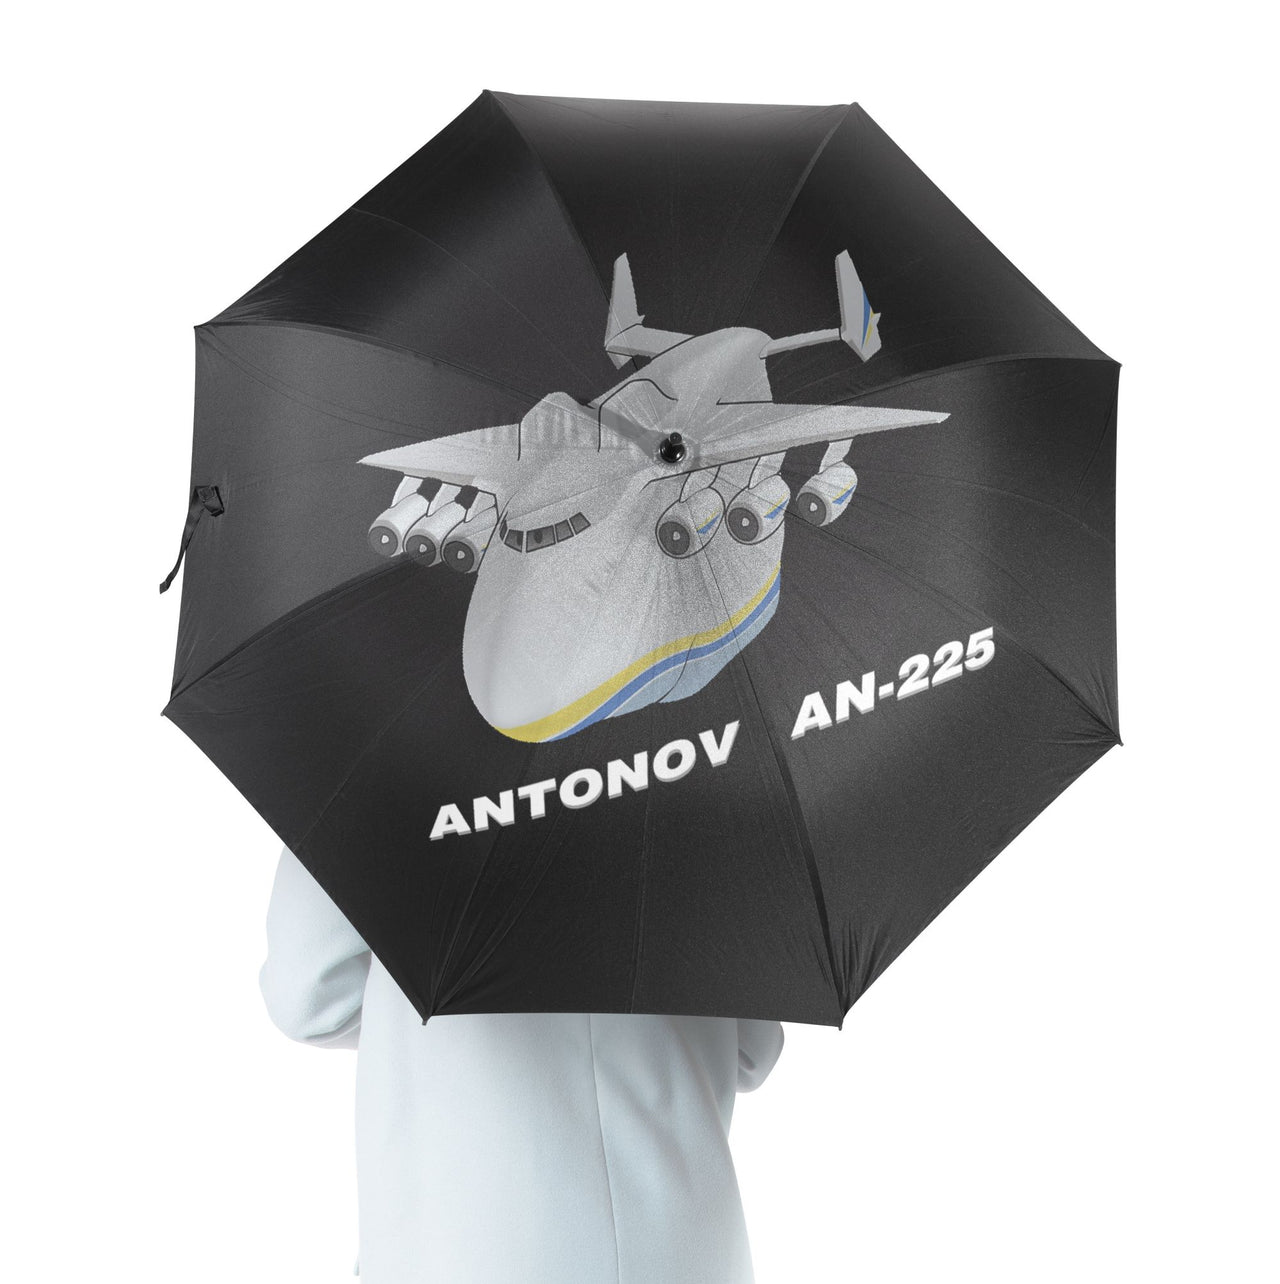 Antonov AN-225 (29) Designed Umbrella